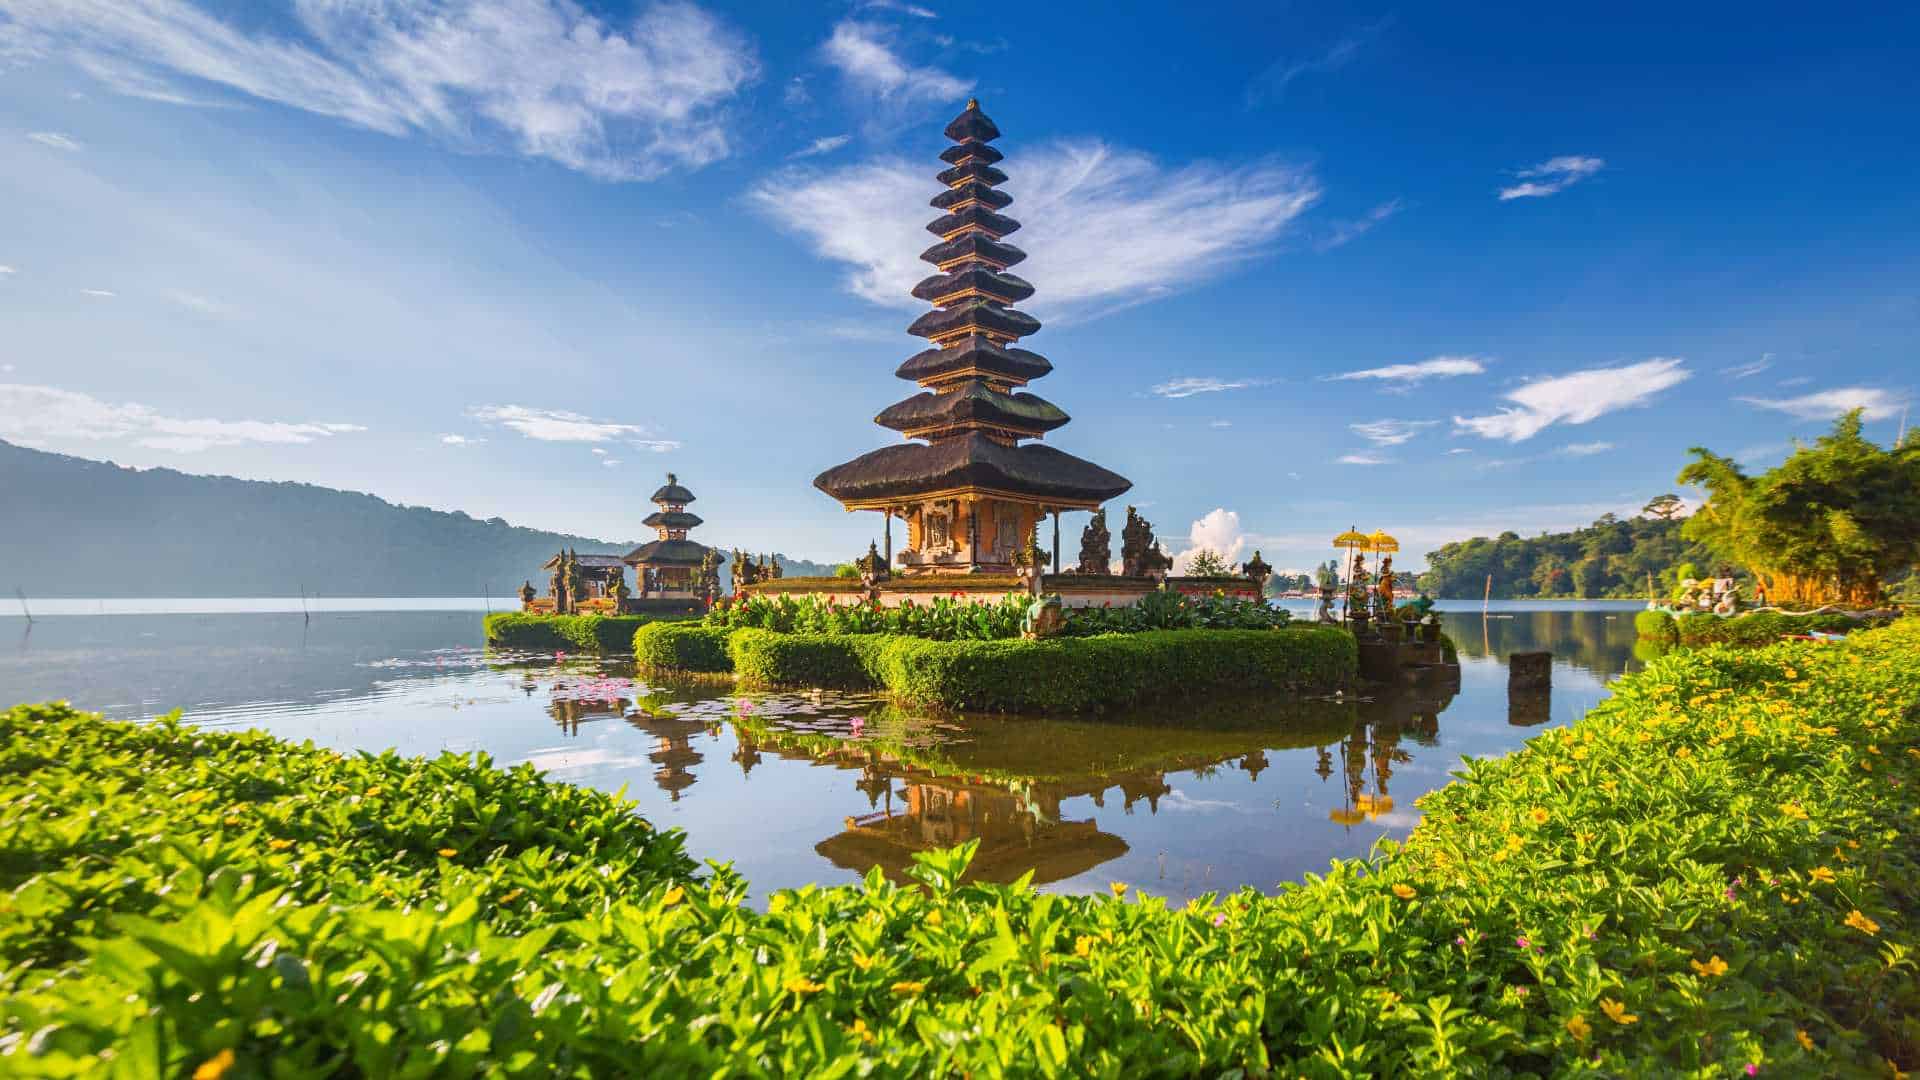 Mystical beauty of Pura Beratan Temple, Bali island